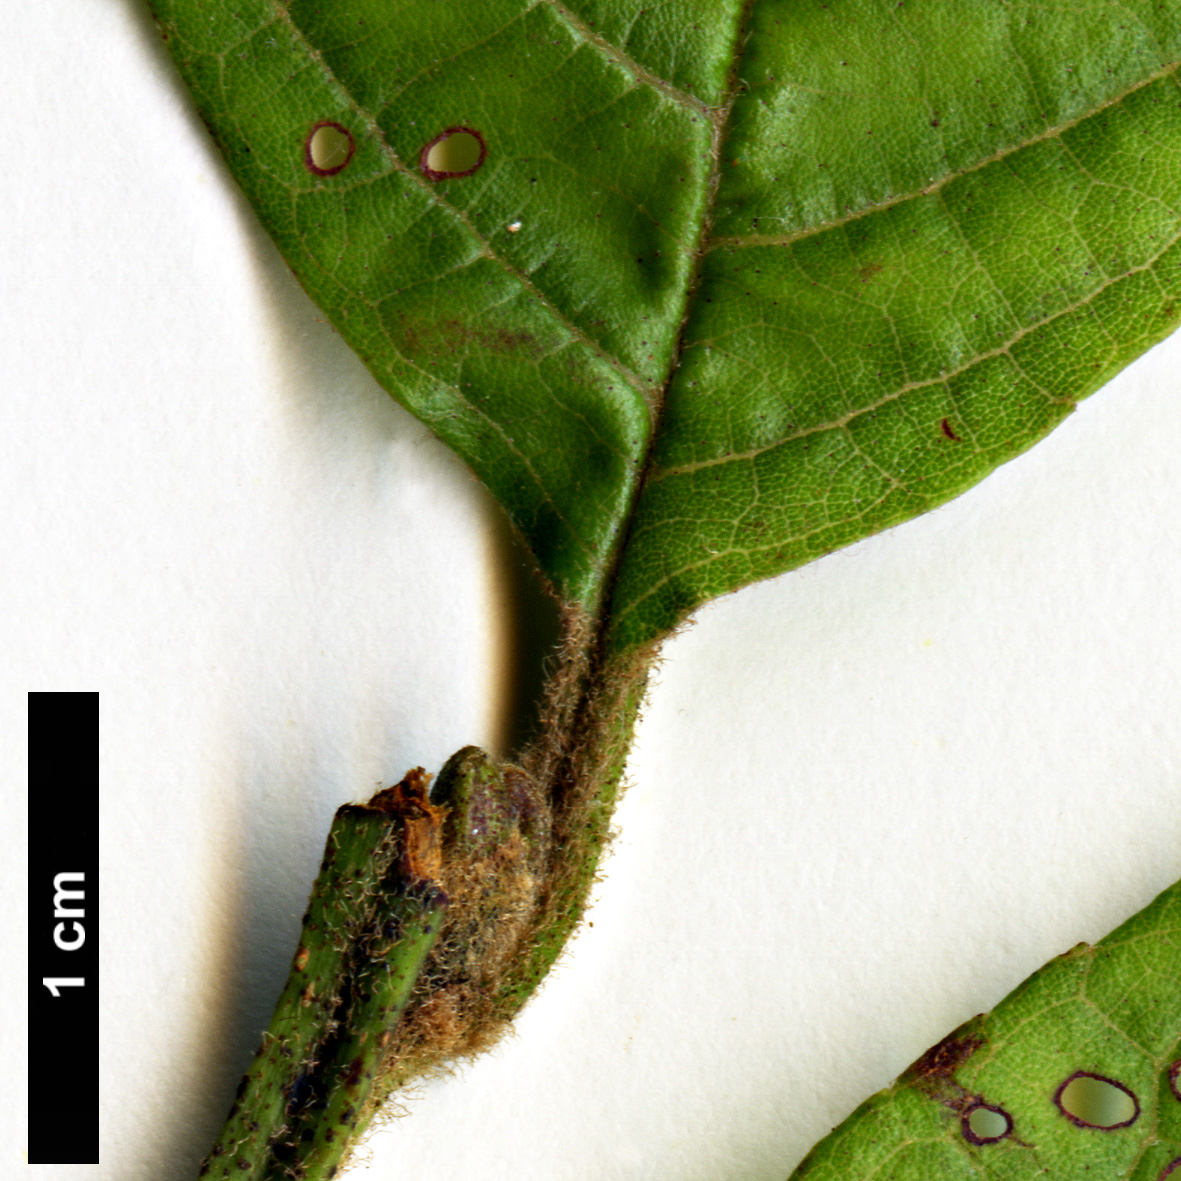 High resolution image: Family: Betulaceae - Genus: Alnus - Taxon: ferdinandi-coburgii 